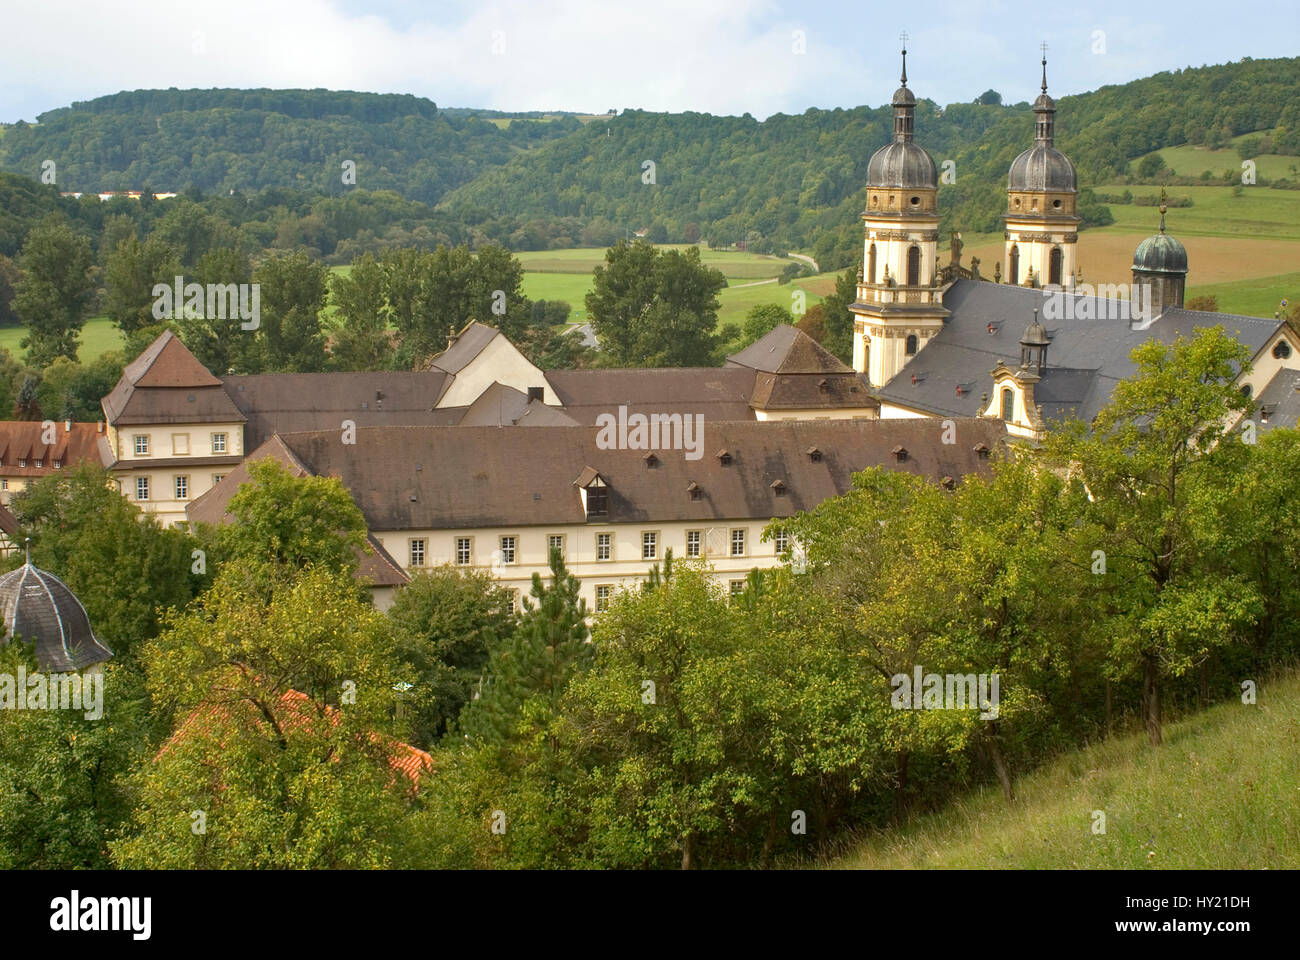 Image de la NTAL Schüller (monastère dans la vallée de la Jagst à l'Etat allemand de Baden-WÃ¼rttemberg. Blick auf das Kloster (Schüller im ntal Jagsttal à Baden Banque D'Images